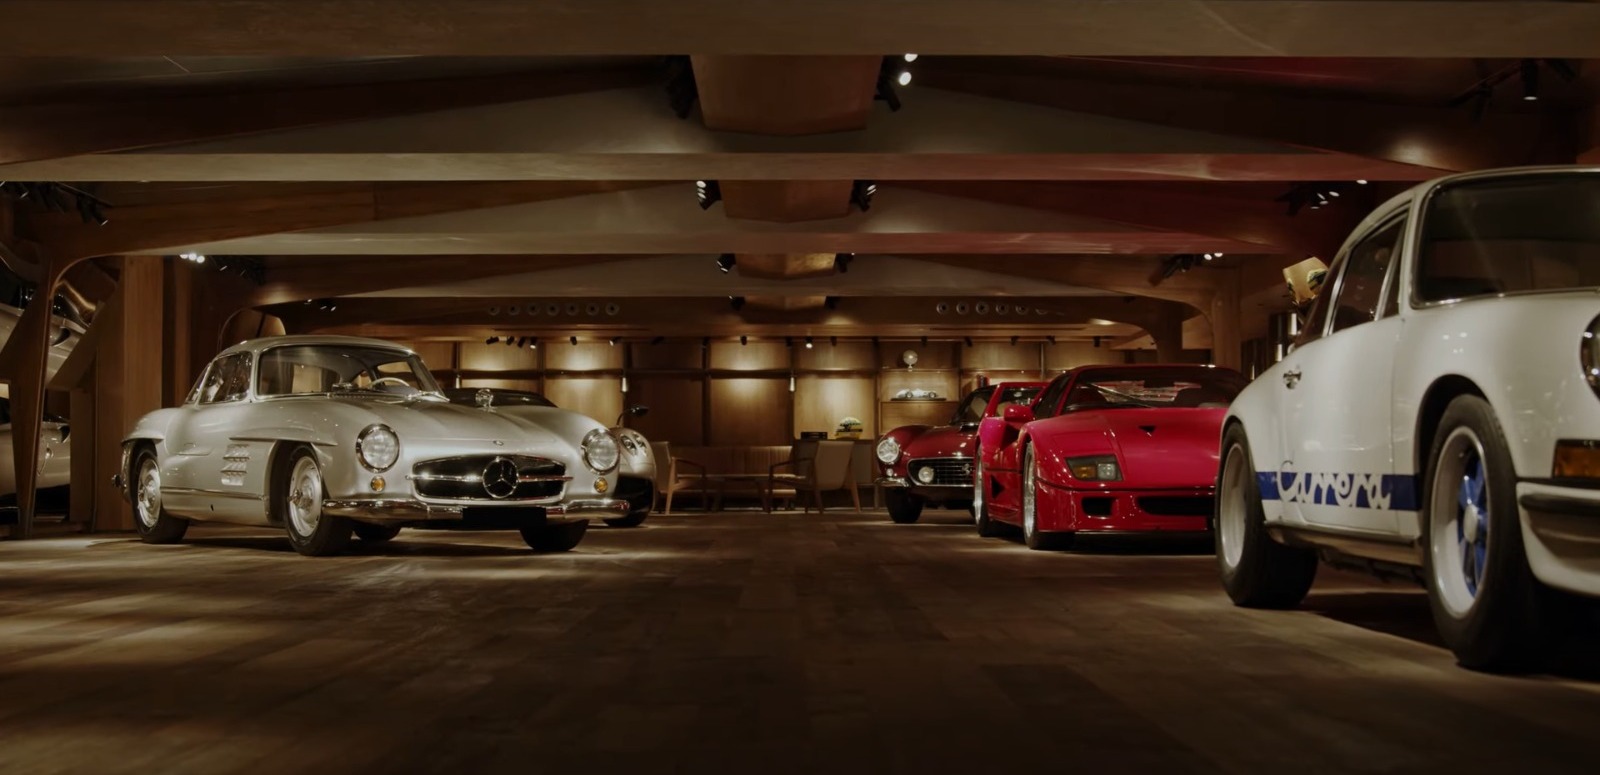 Una biblioteca-garaje de lujo rodeada de coches clásicos